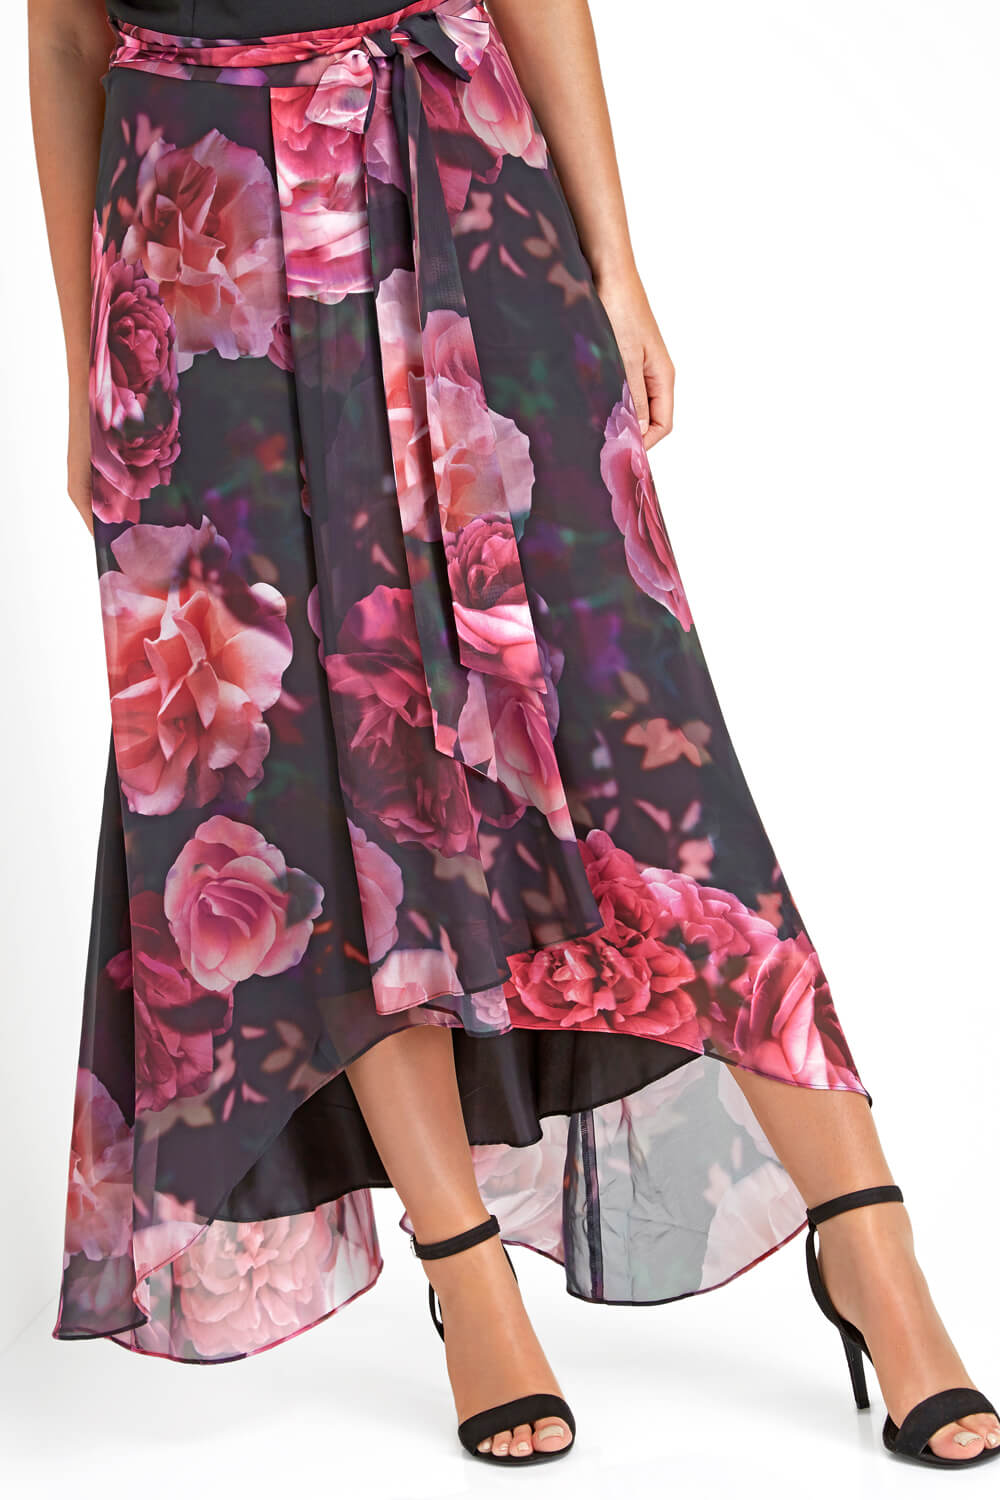 PINK Floral Print Cold Shoulder Maxi Dress, Image 4 of 5